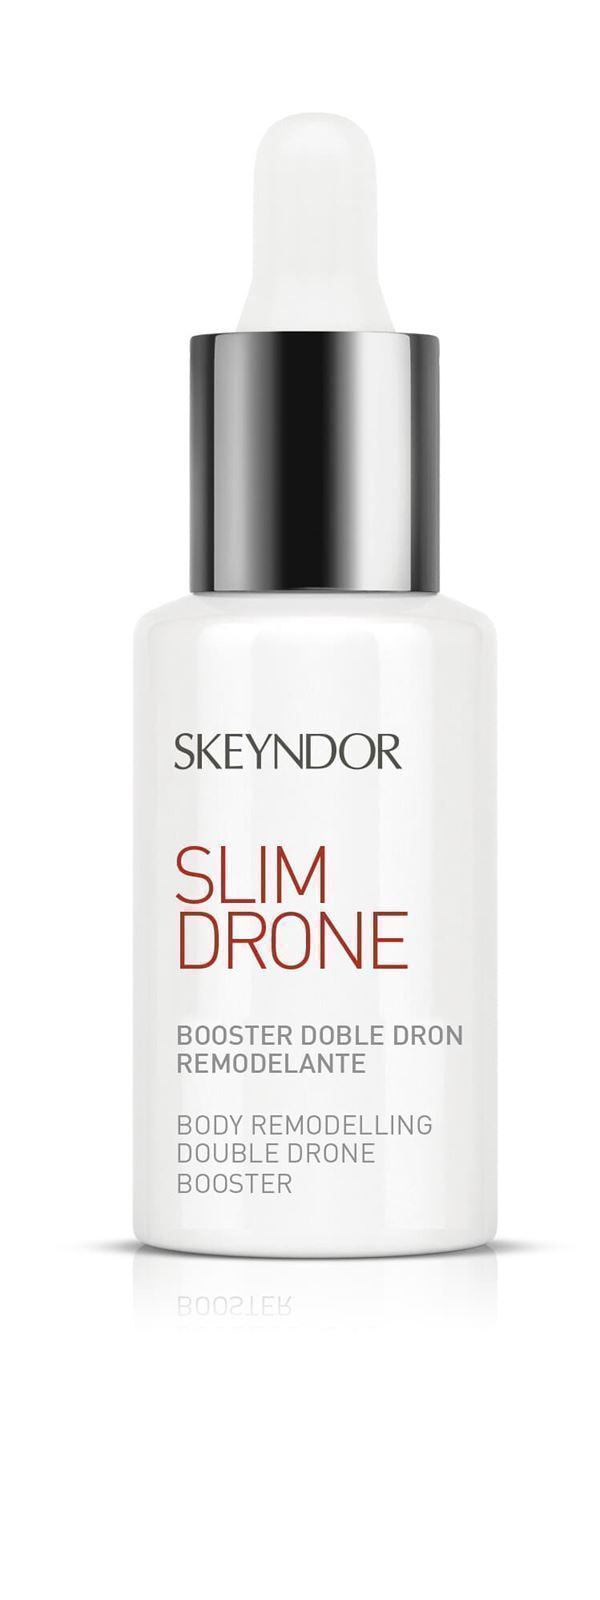 SKEYNDOR BOOSTER DOBLE DRON REMODELANTE - Imagen 1